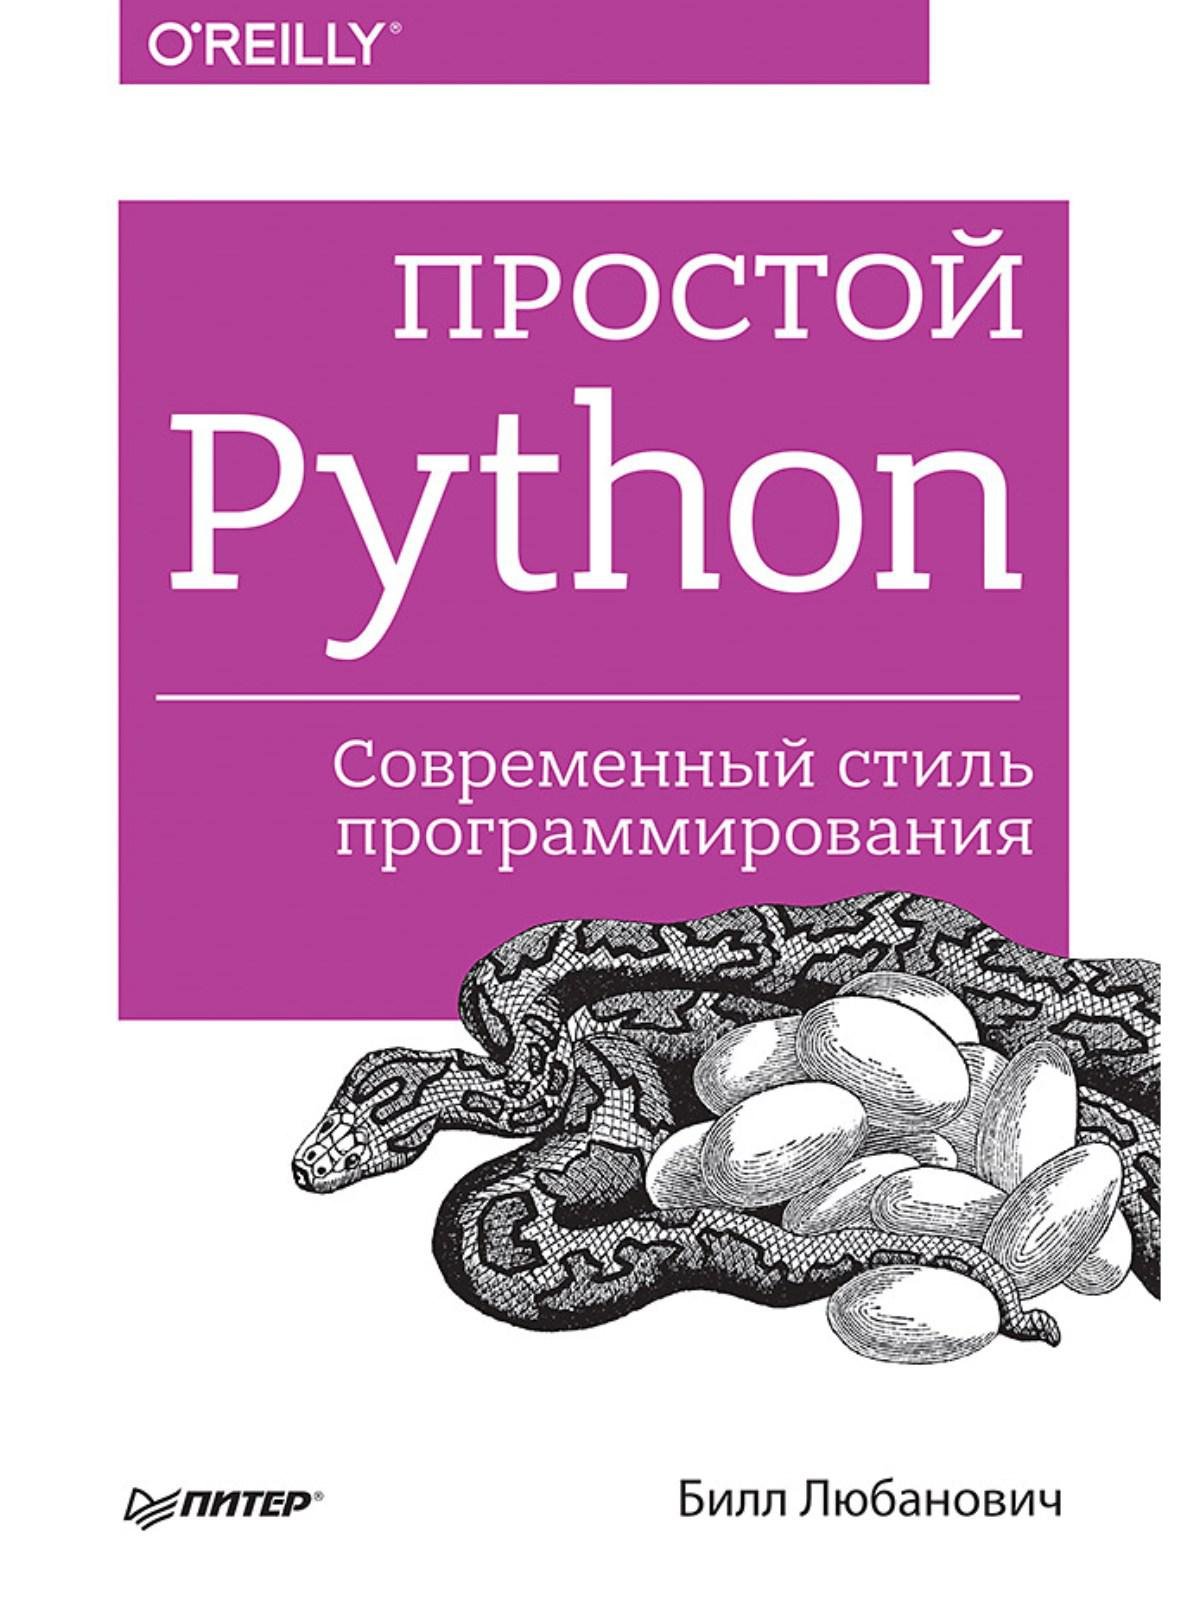   Буквоед Простой Python. Современный стиль программирования